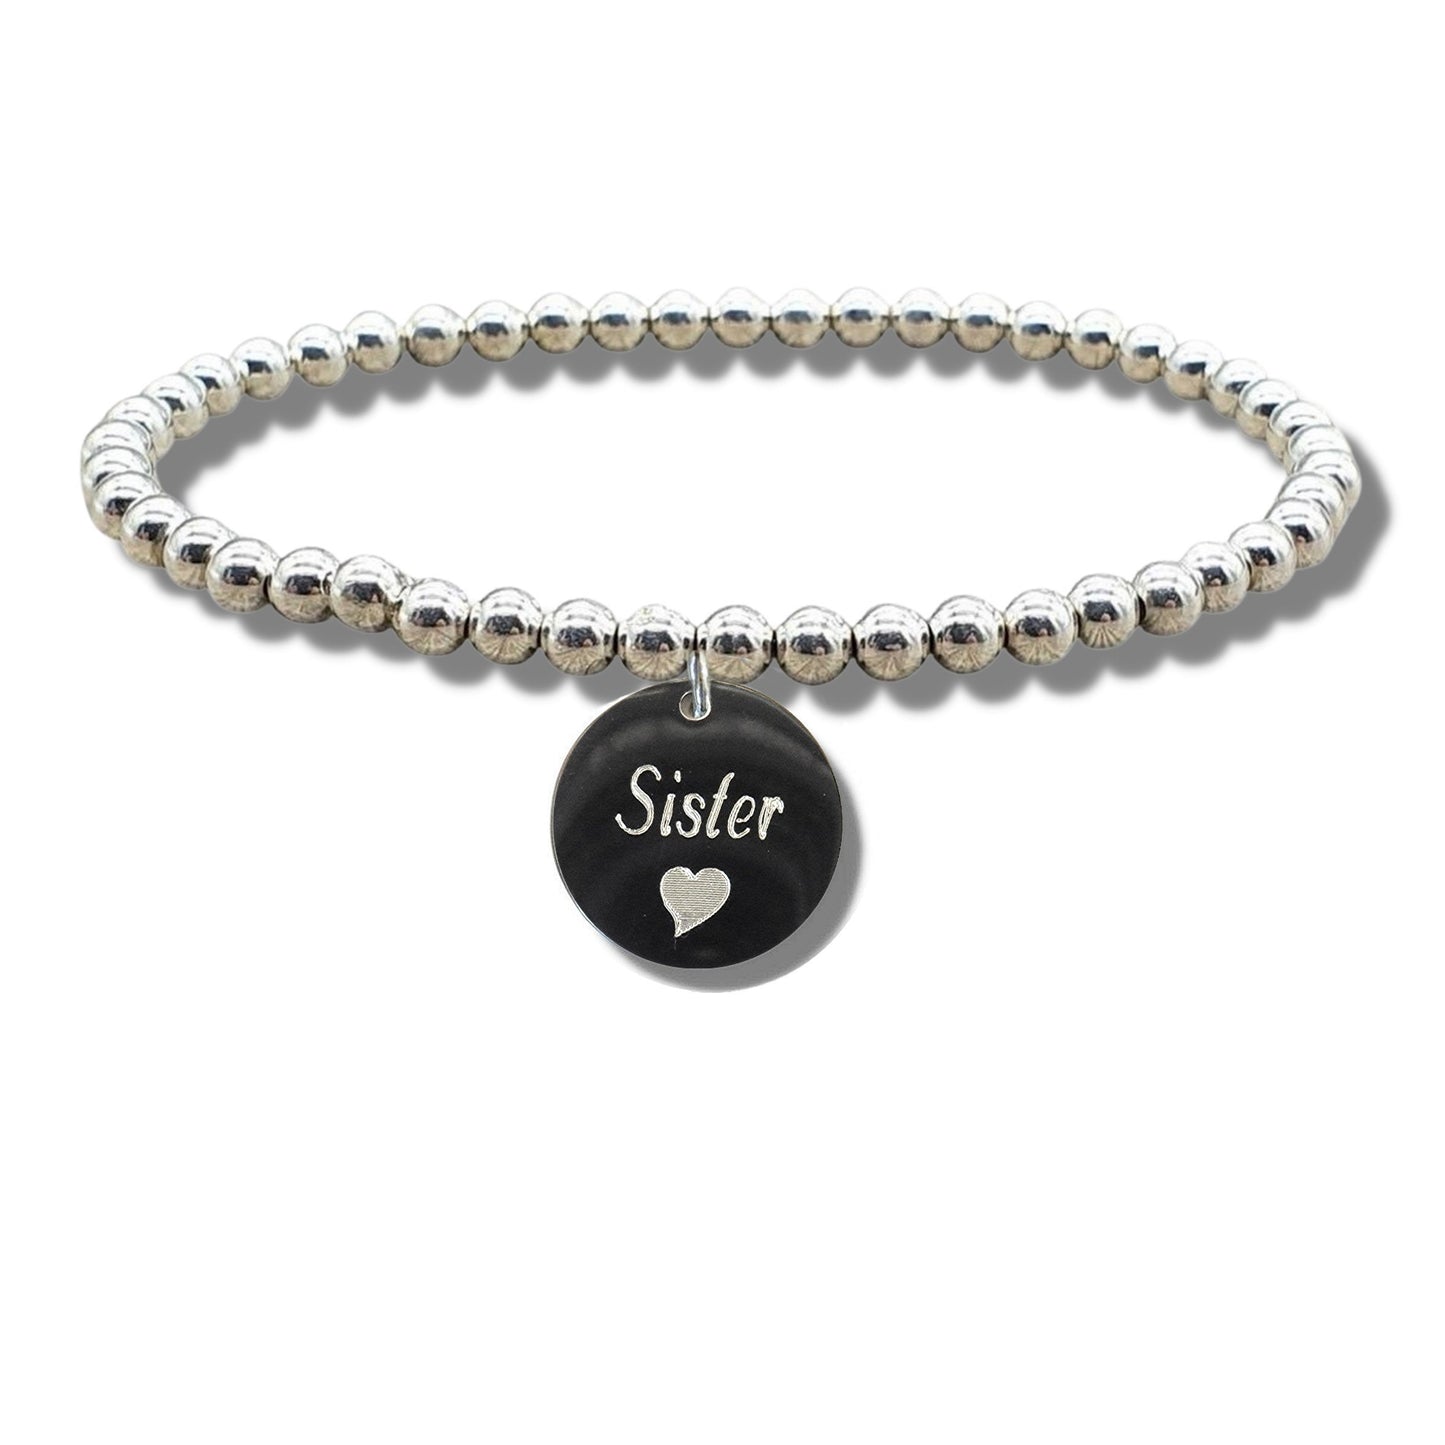 Sister Disc Bracelet & Heart Symbol